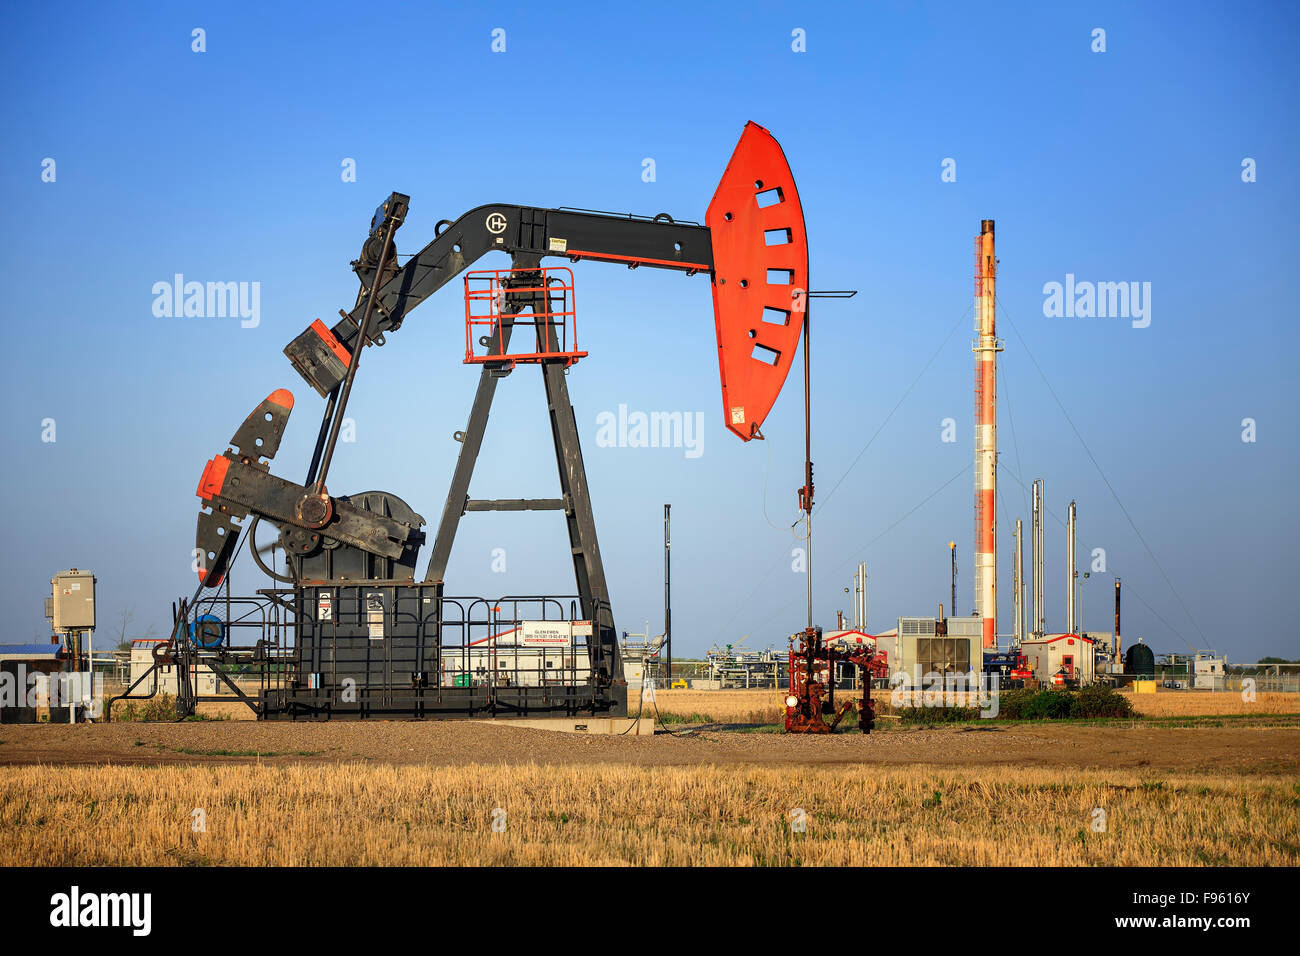 Jack la pompe à huile et du gaz naturel, de l'usine de pétrole de Bakken, près de Glen Ewen, Saskatchewan, Canada Banque D'Images